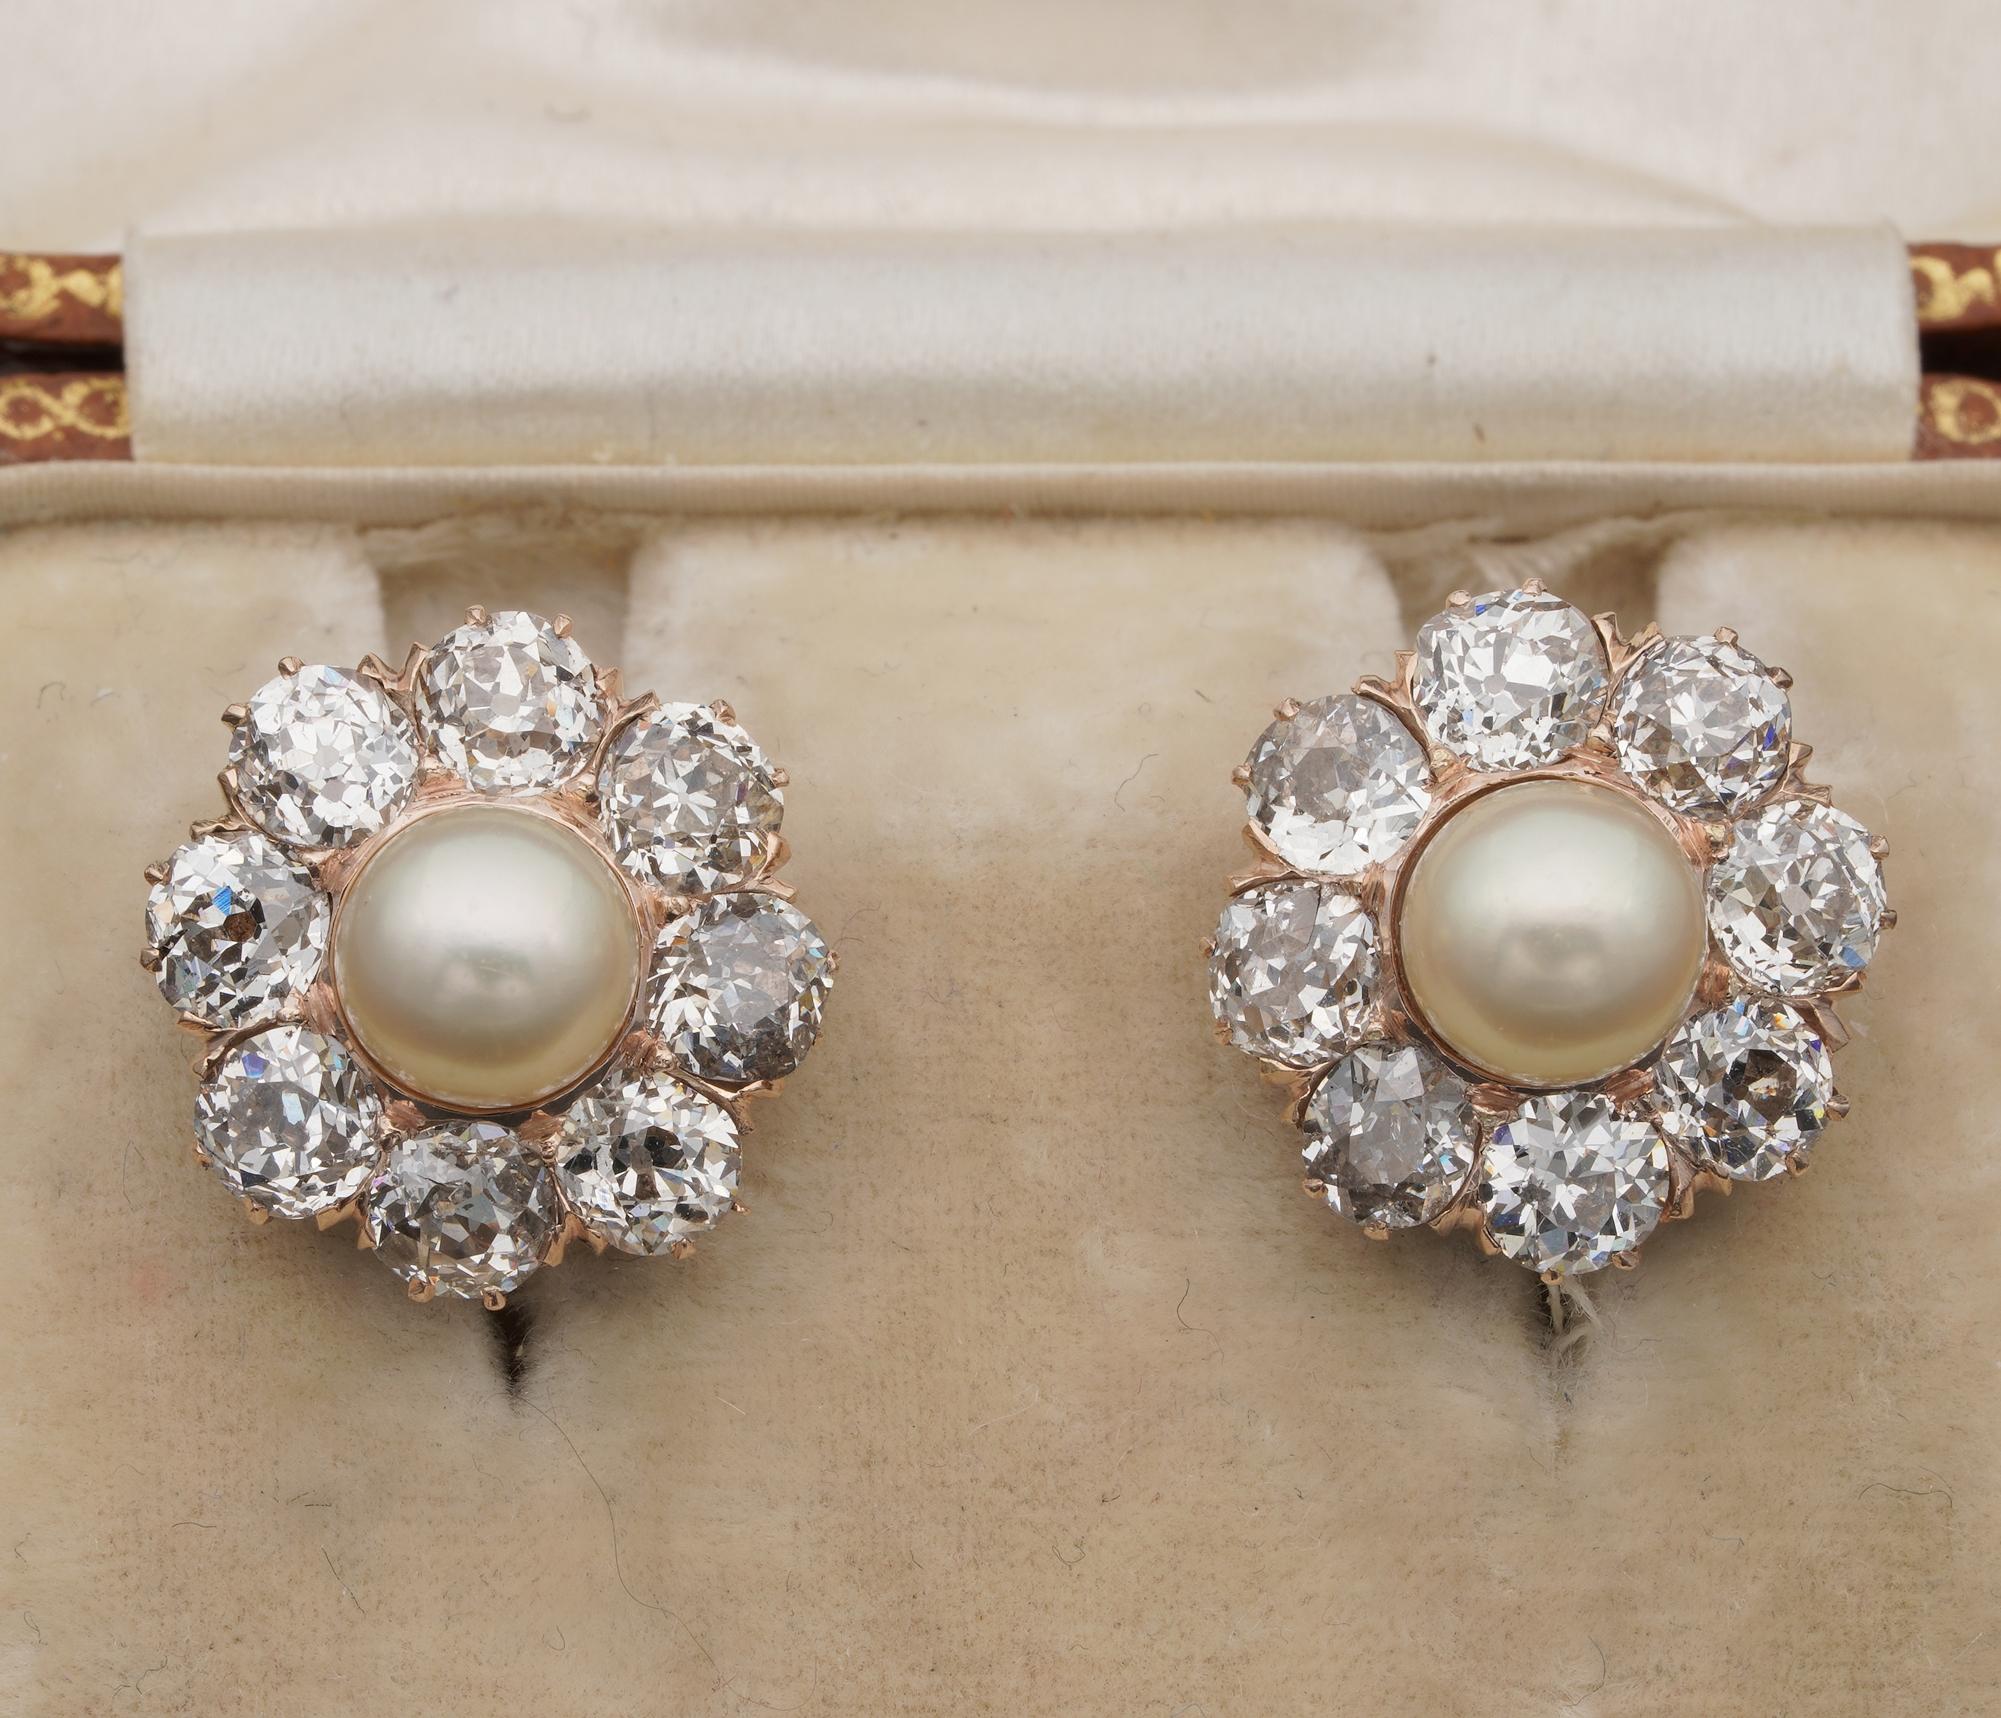 Beeindruckende viktorianische Ära Diamant-Perlen-Ohrringe, 1890 ca.
Handgefertigt aus massivem 18 Kt Gold
Wunderschöne viktorianische Handwerkskunst und ein hoher Gehalt an Diamanten, die eine seltene Perle in der Mitte umgeben, stilvolles